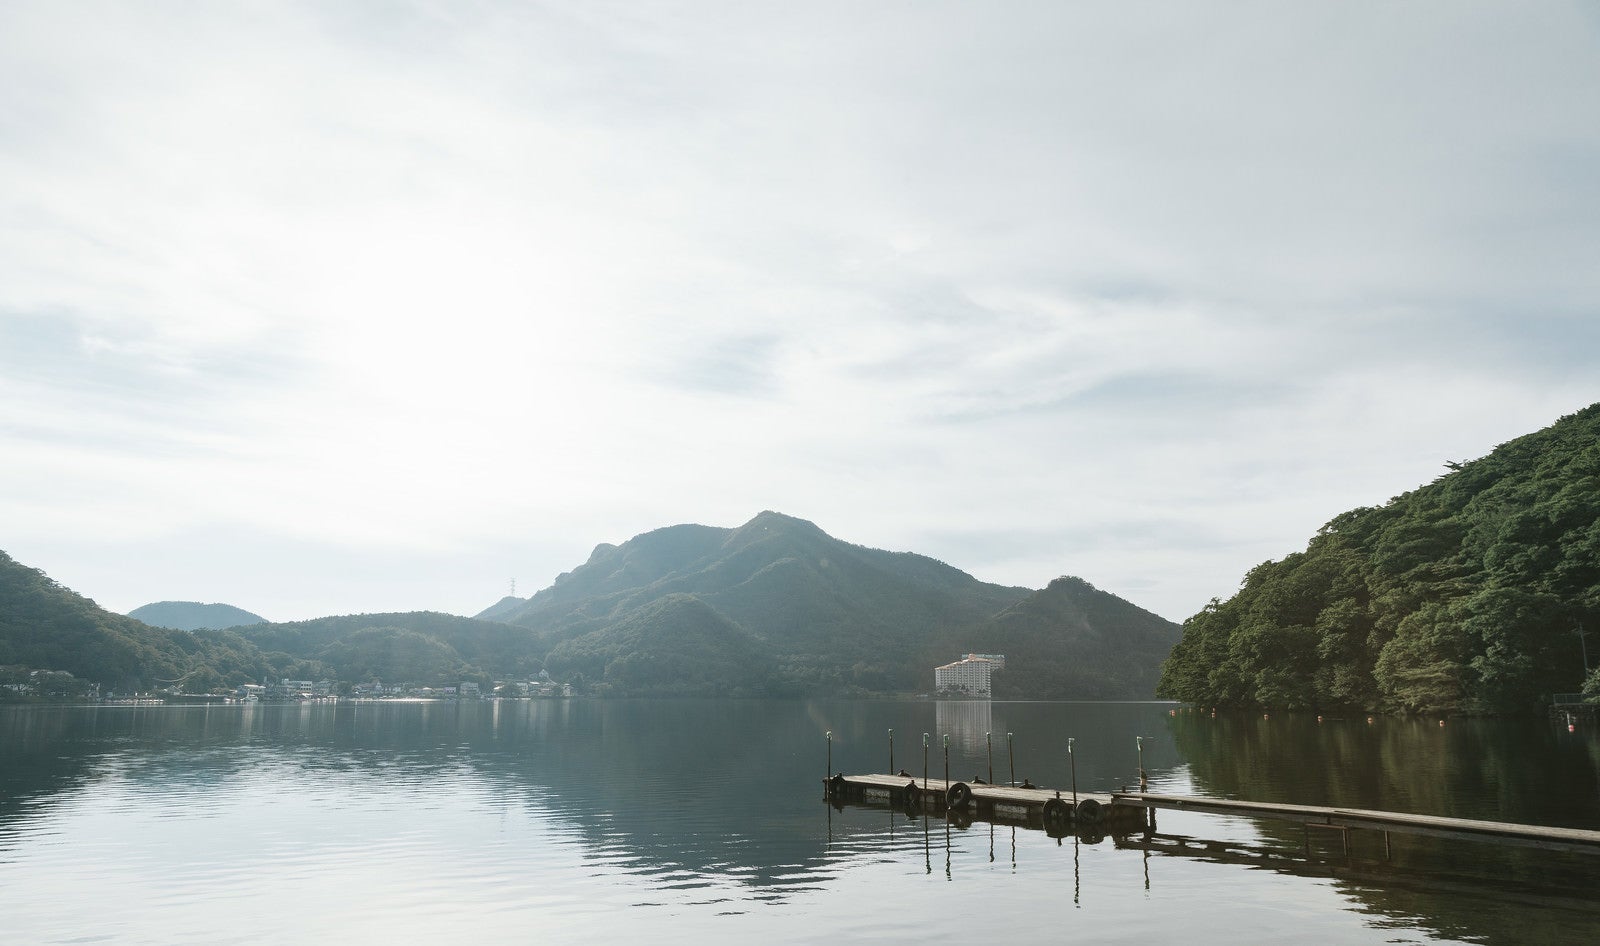 「群馬県西部にある榛名湖」の写真